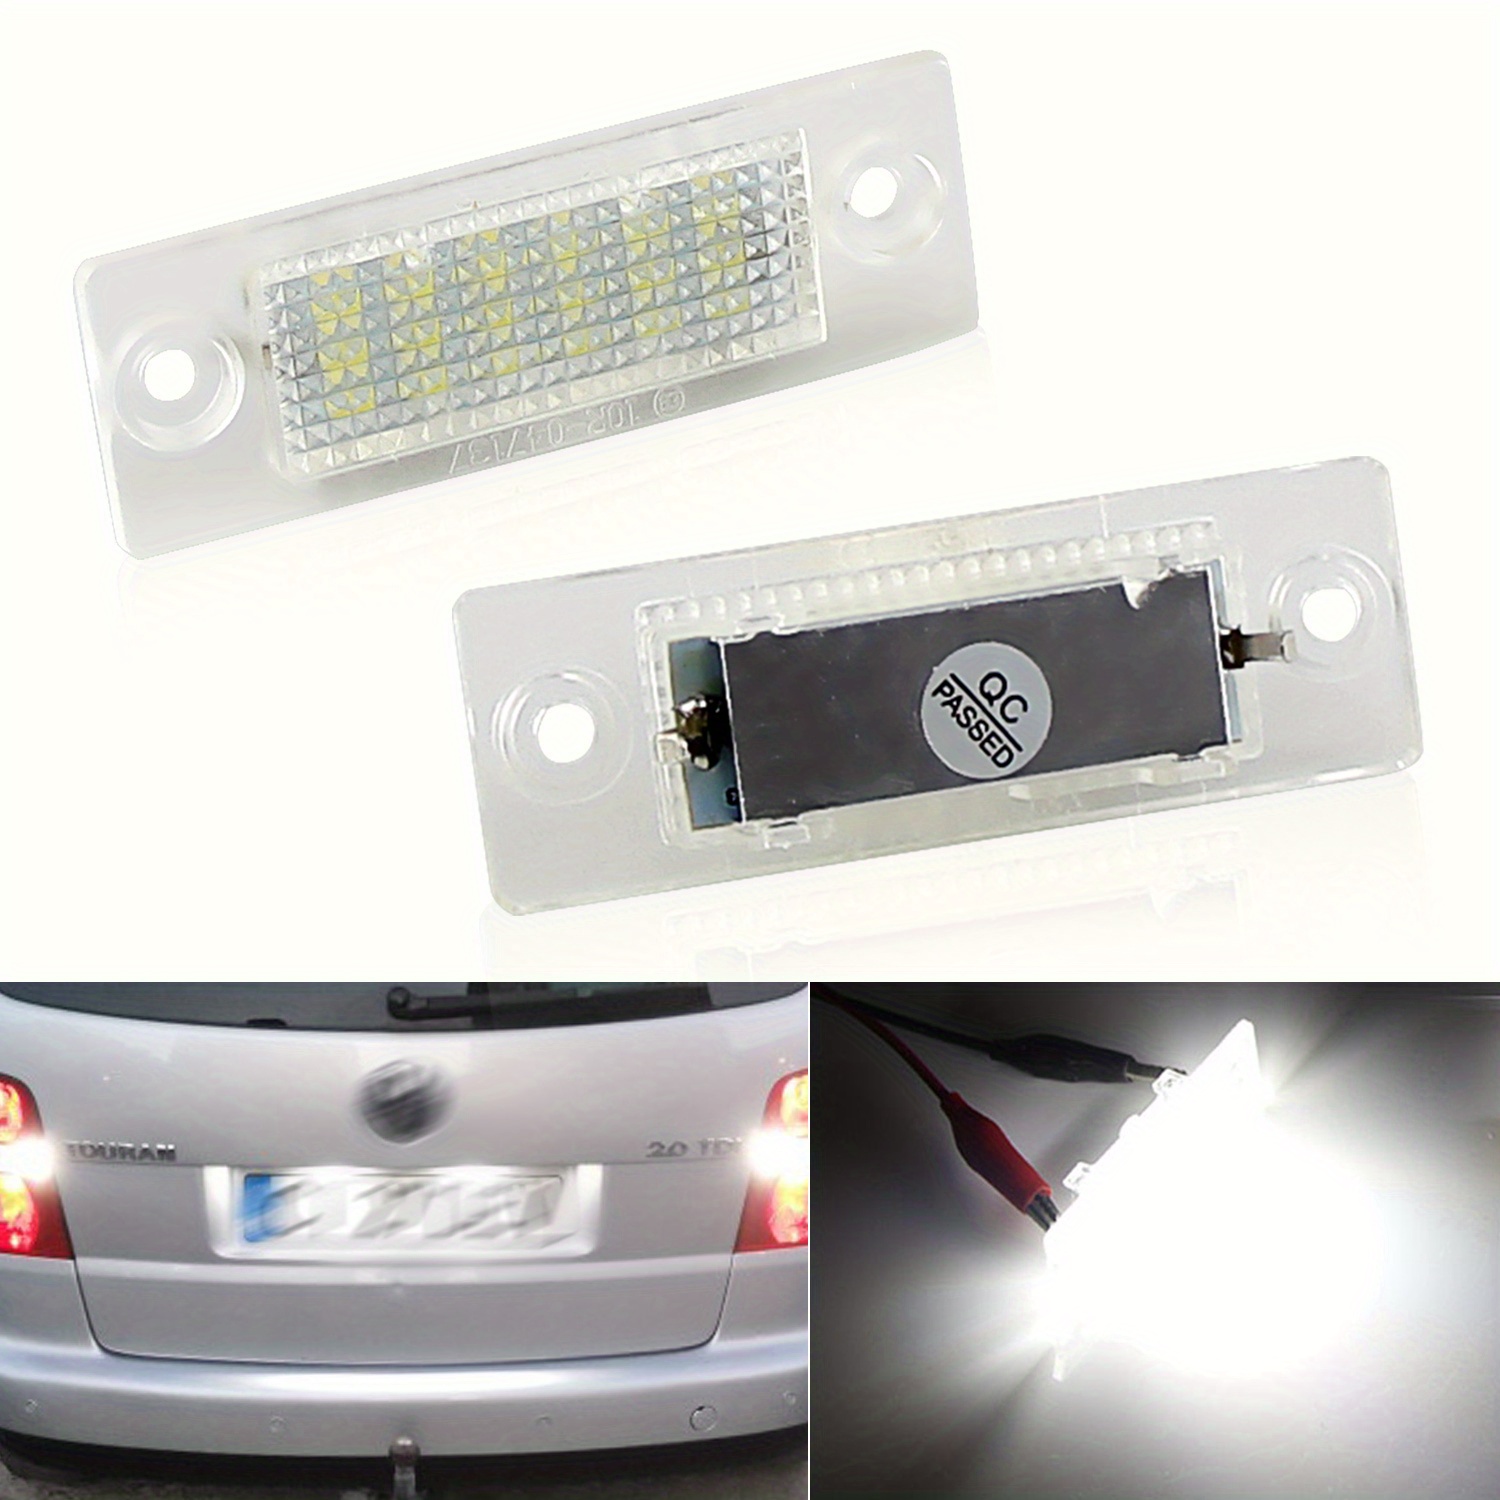 2 x LED Kennzeichenbeleuchtung für VW Caddy MK3 Transporter T5 T6 T6.1 Golf  MK5 P/Assat B5 B6 J/etta Touran Skoda Superb 18-SMD 6000K Weiß Canbus LED